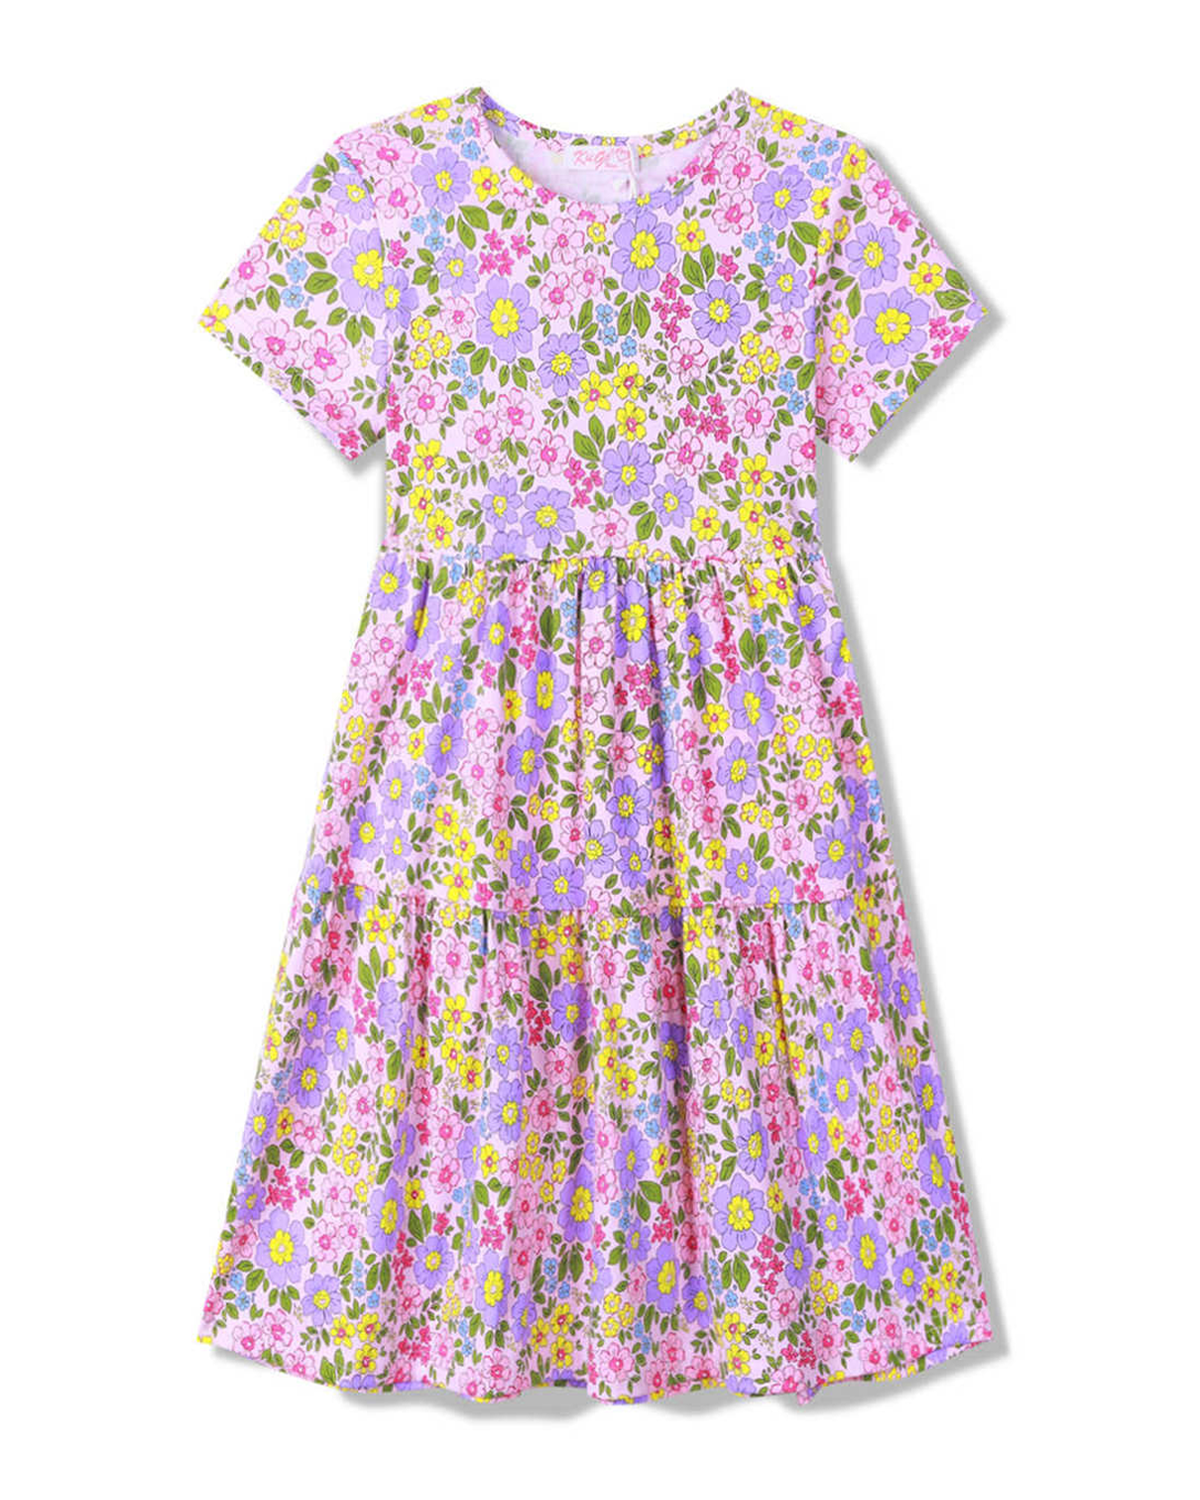 Dívčí šaty - KUGO CS1067, světle růžová Barva: Růžová, Velikost: 134